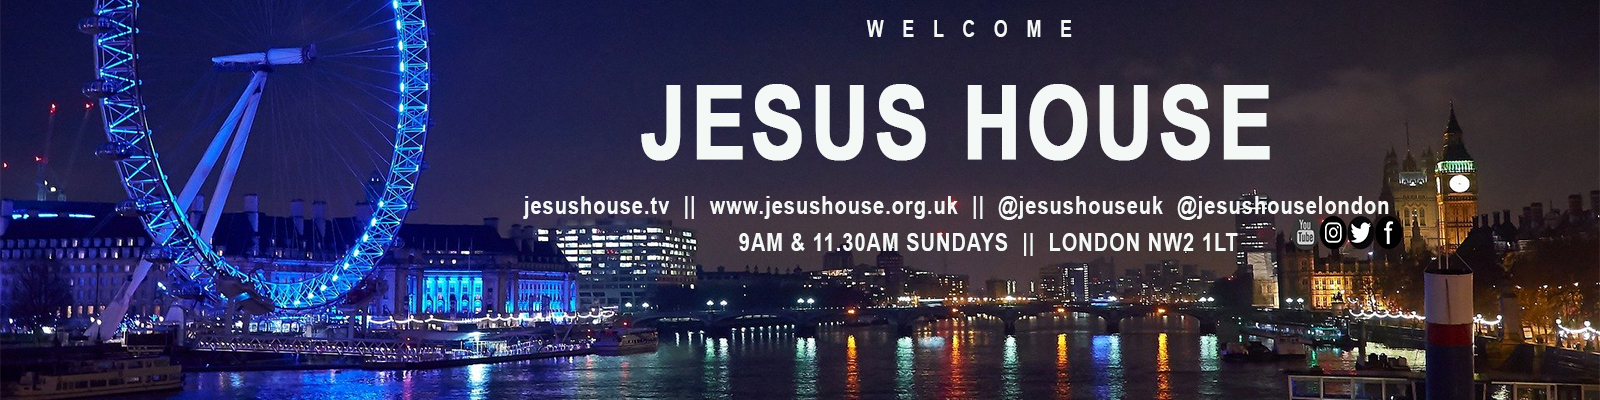 Jesus House UK Podcast